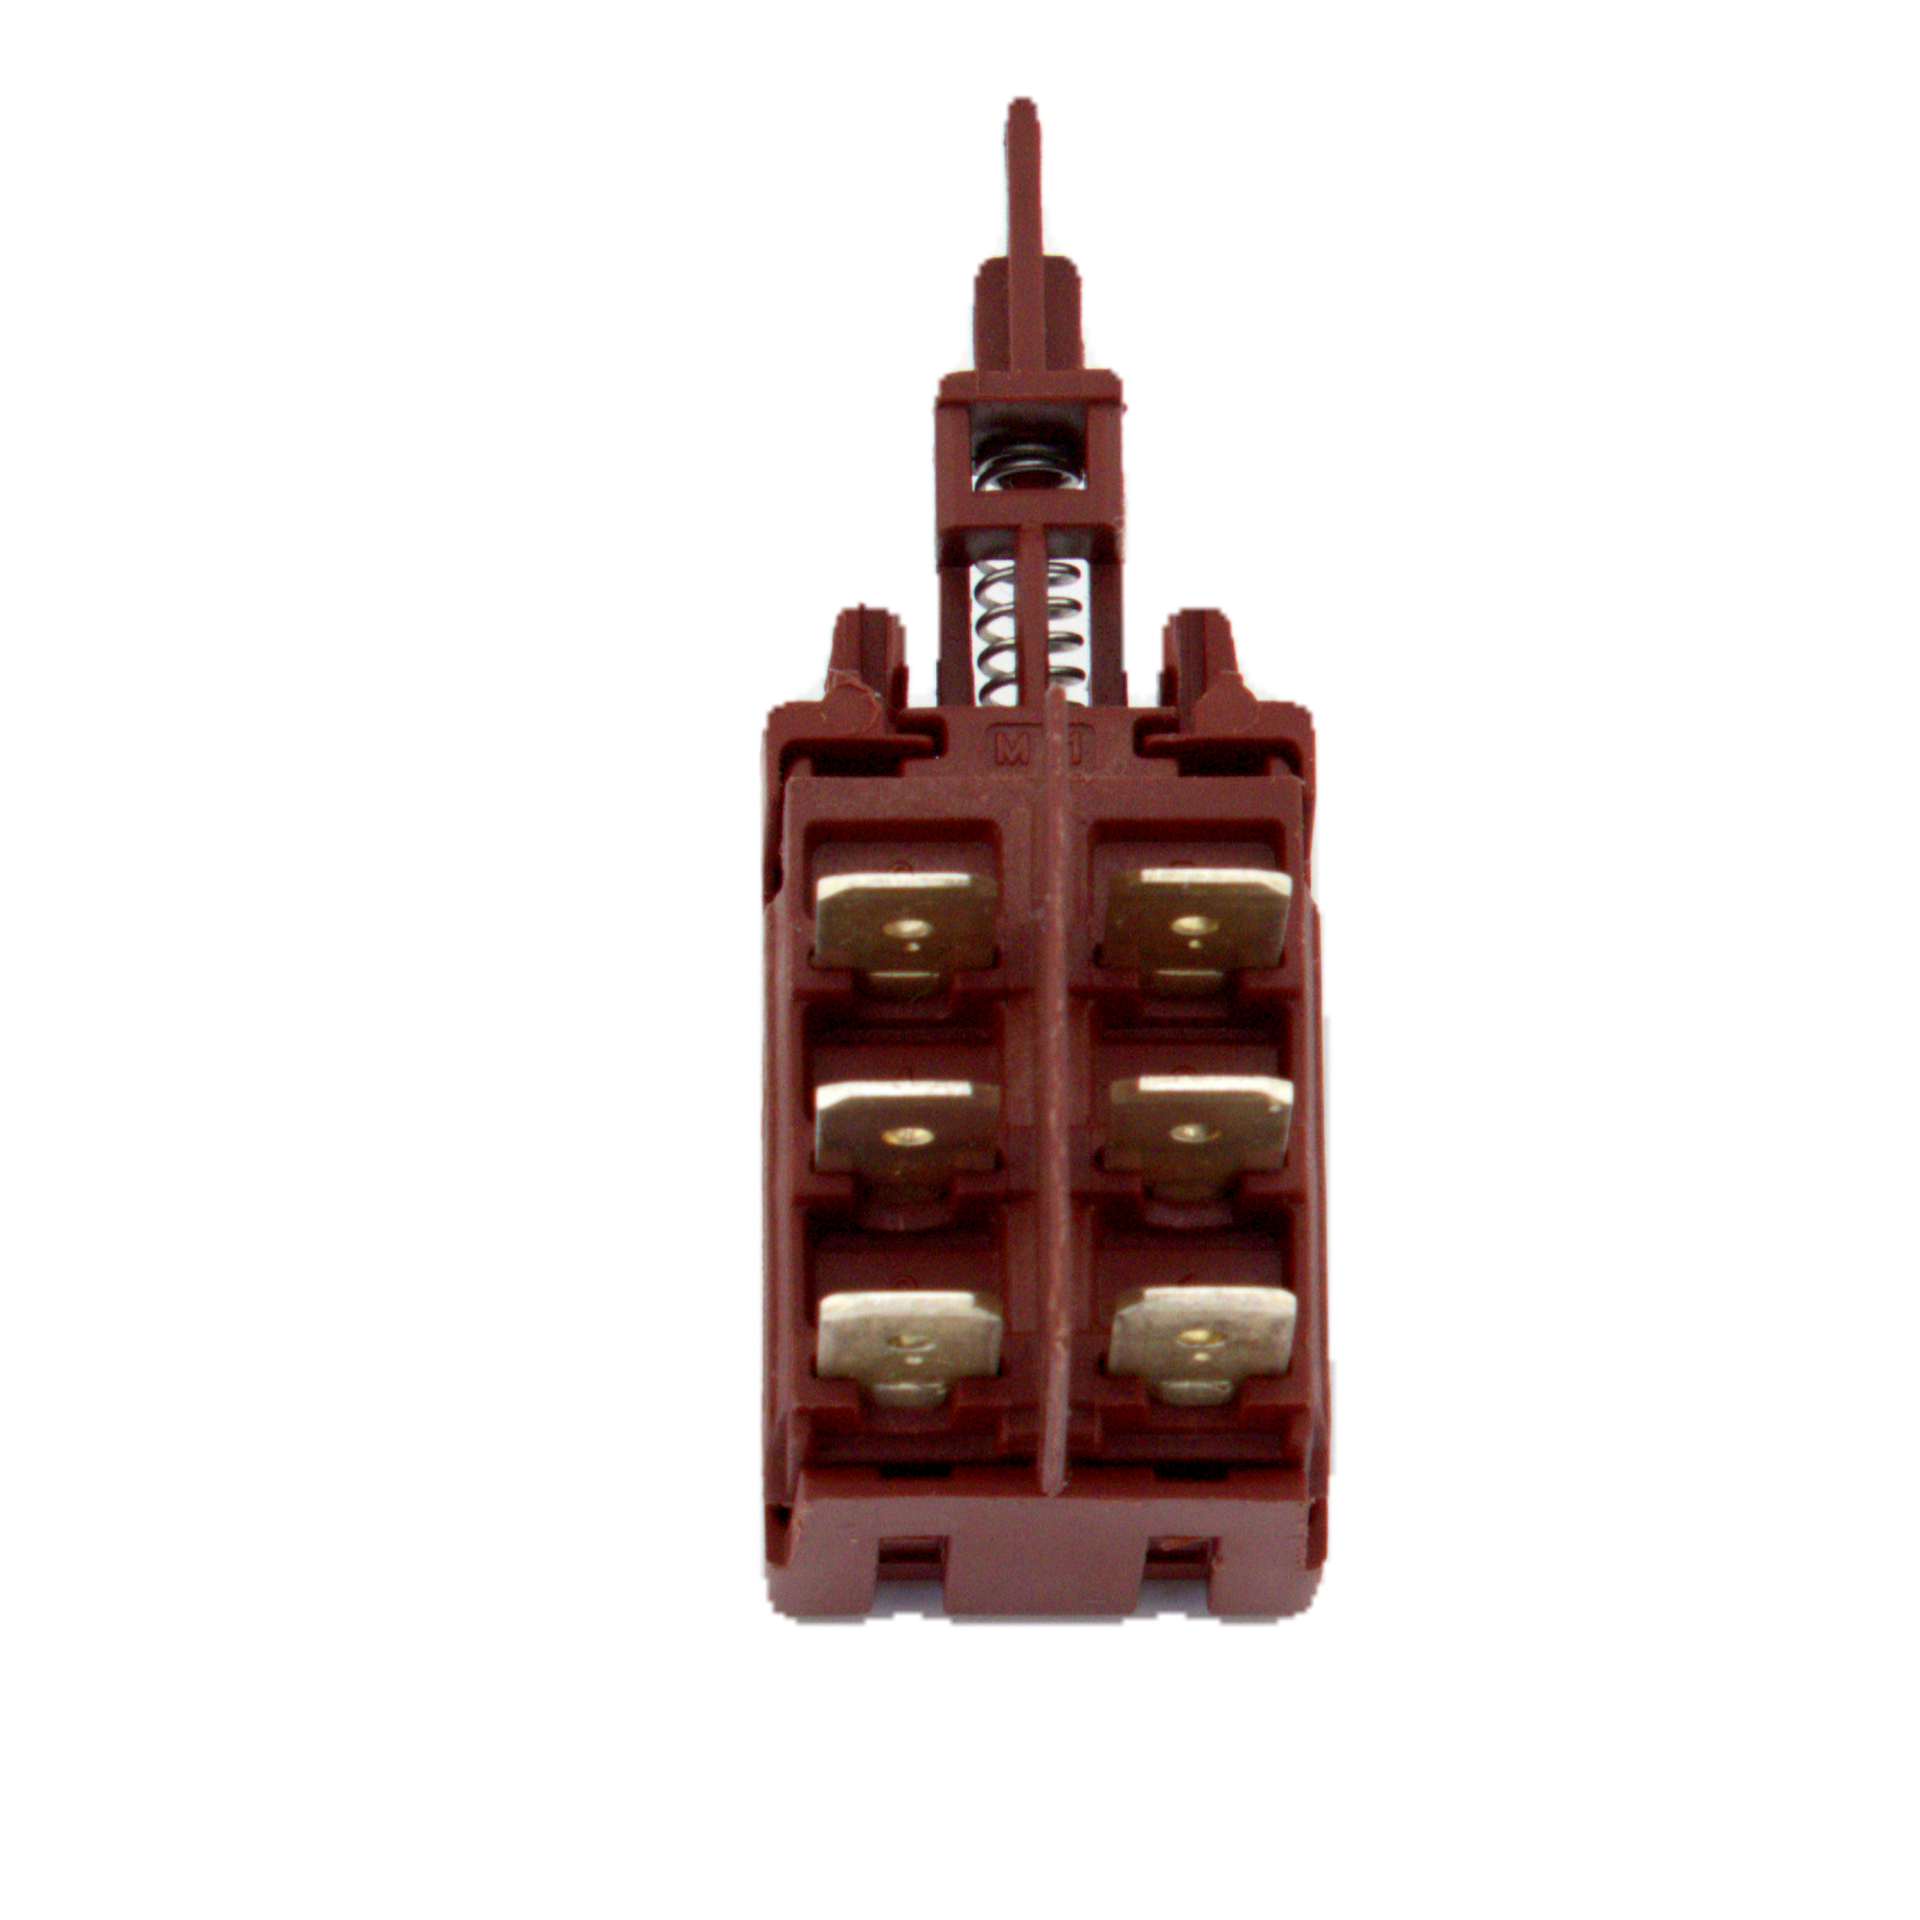 Кнопка сетевая стиральной машины Ardo, 6 контактов, возможная замена 651016367, 522004602, 522000800